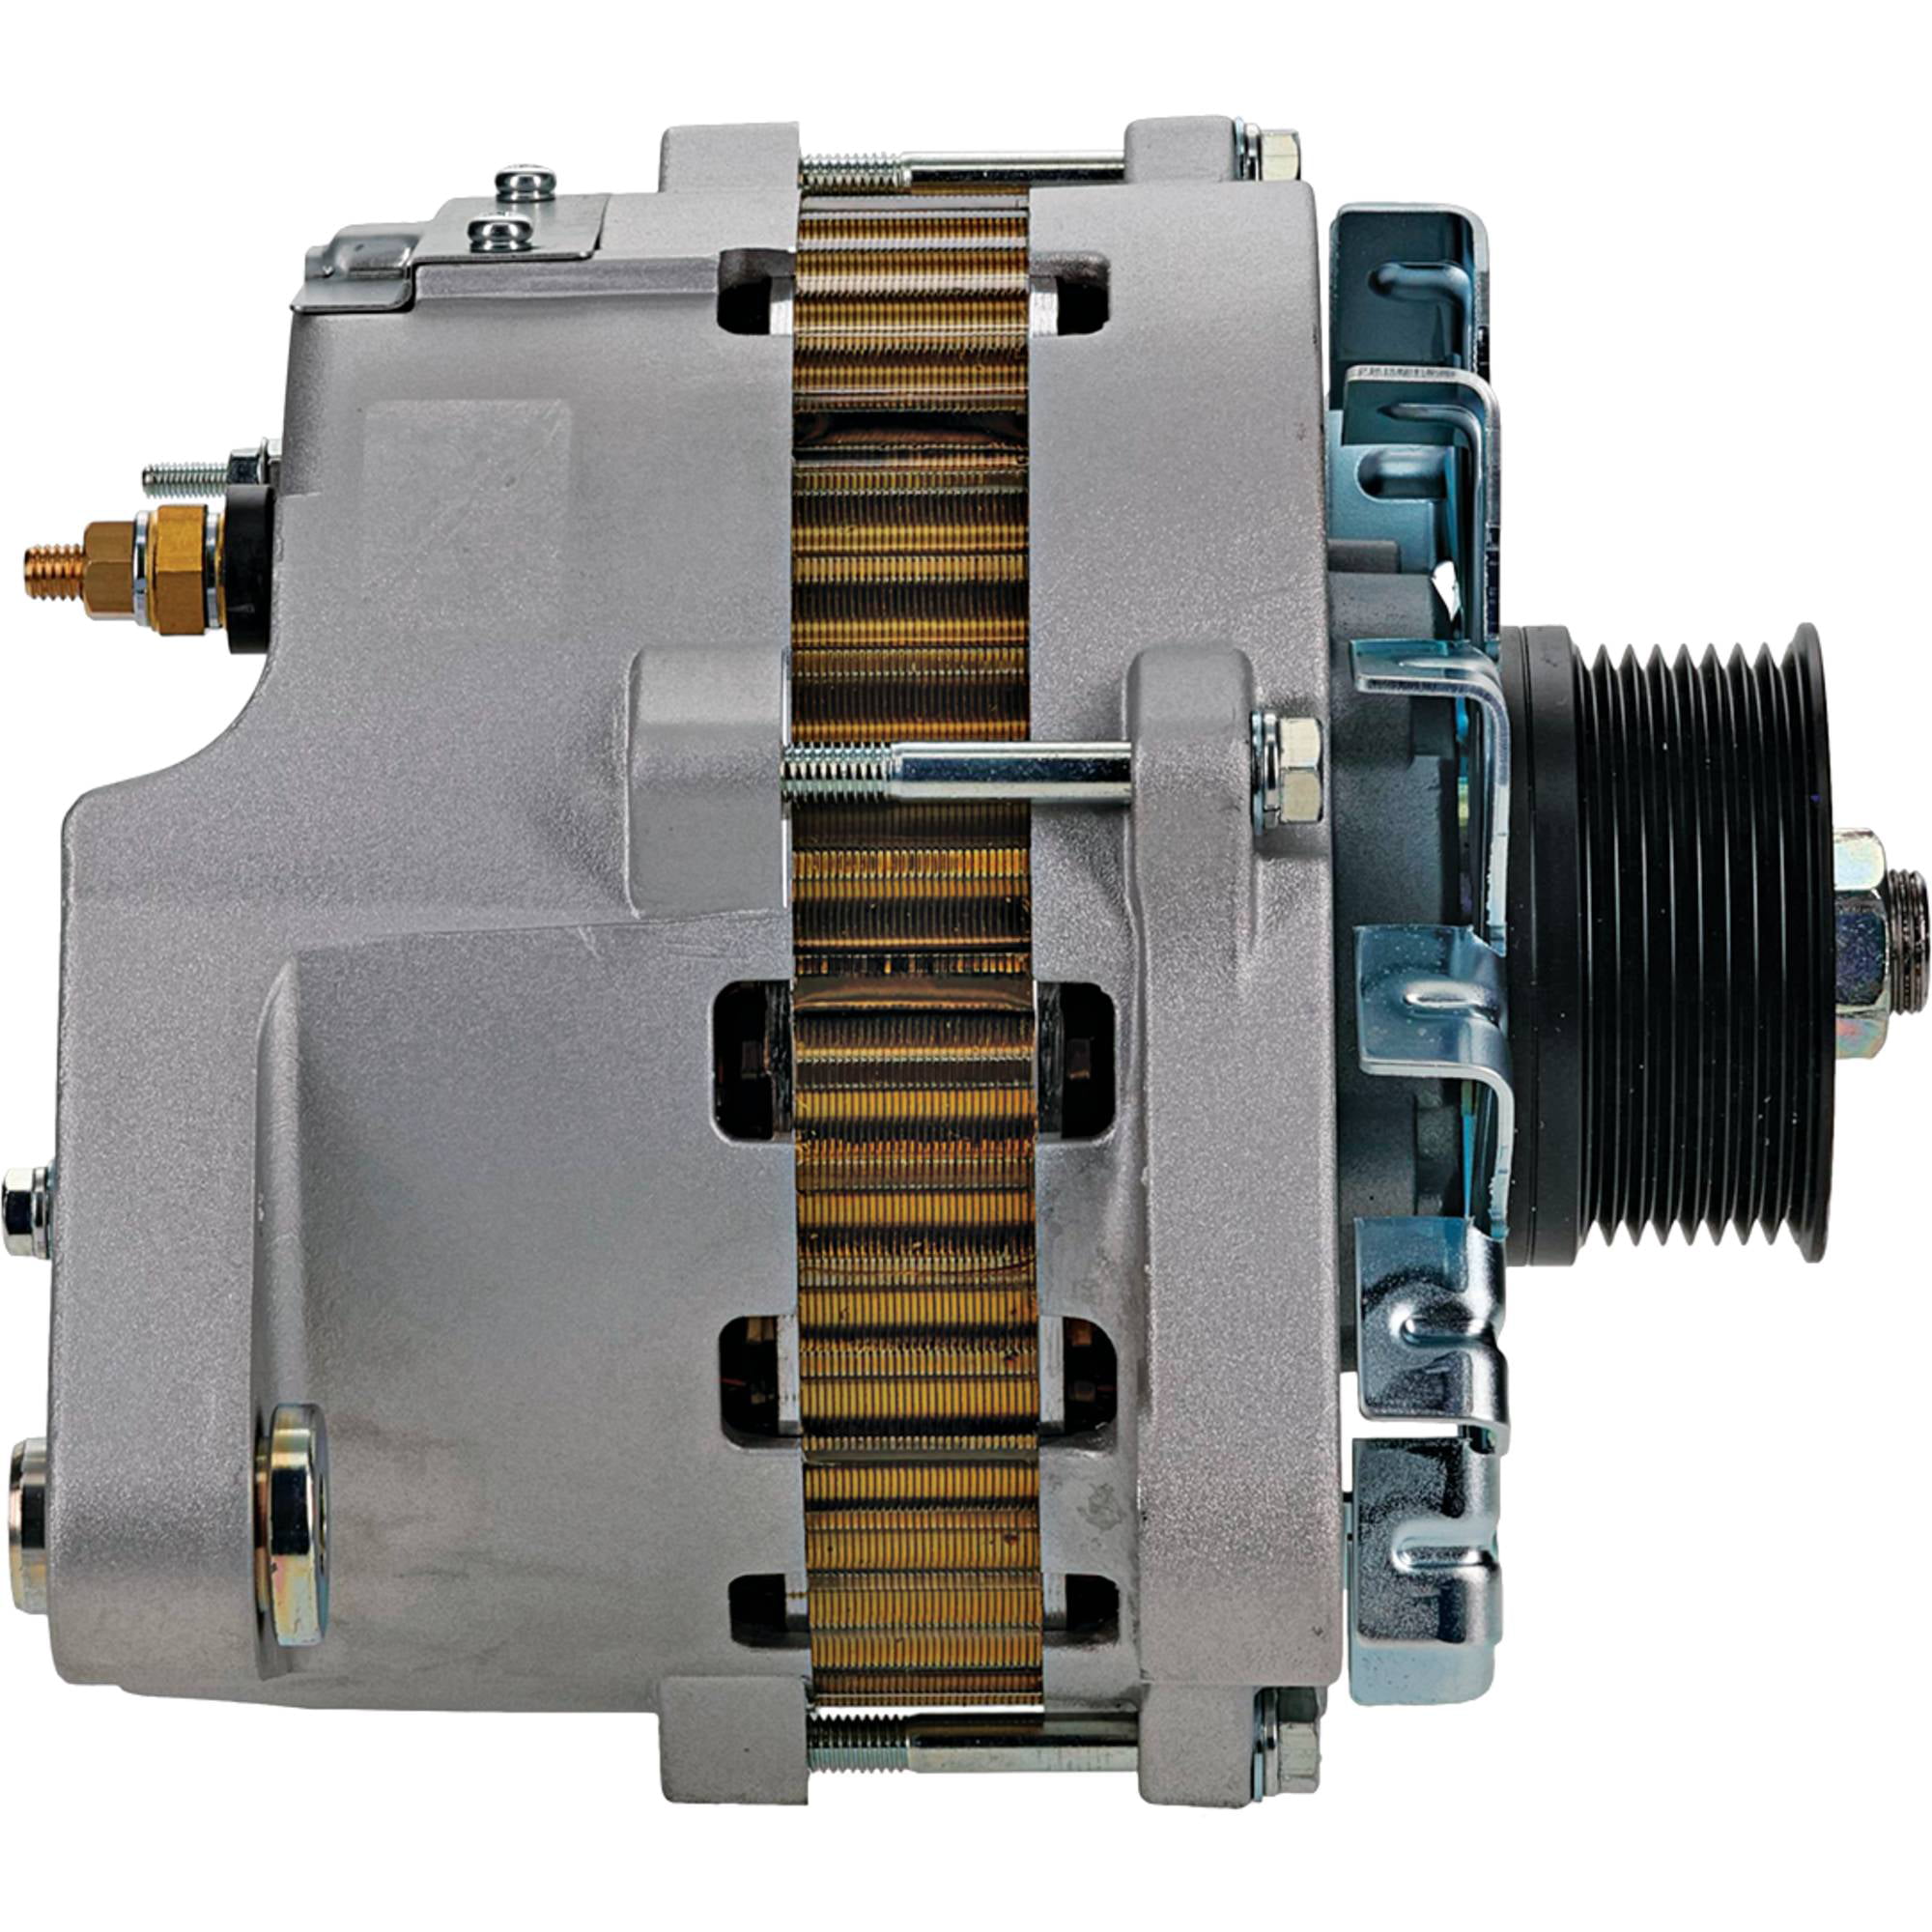 DB Electrical Alternator NIK-0-35000-8795 Replaces Komatsu 600-861-9121,  Nikko 0-35000-8640 